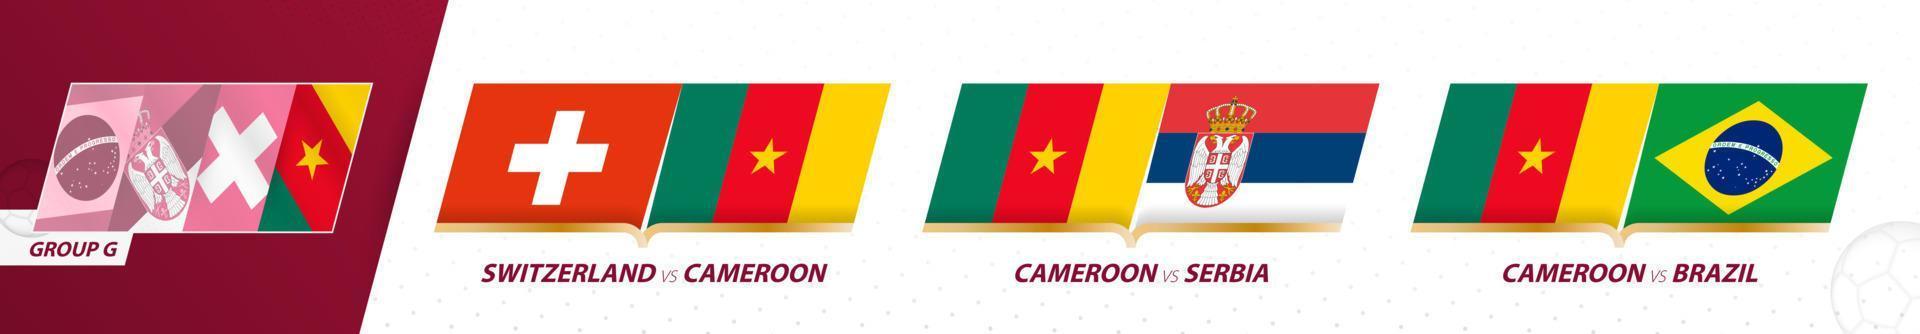 Kameroen Amerikaans voetbal team spellen in groep g van Internationale Amerikaans voetbal toernooi 2022. vector